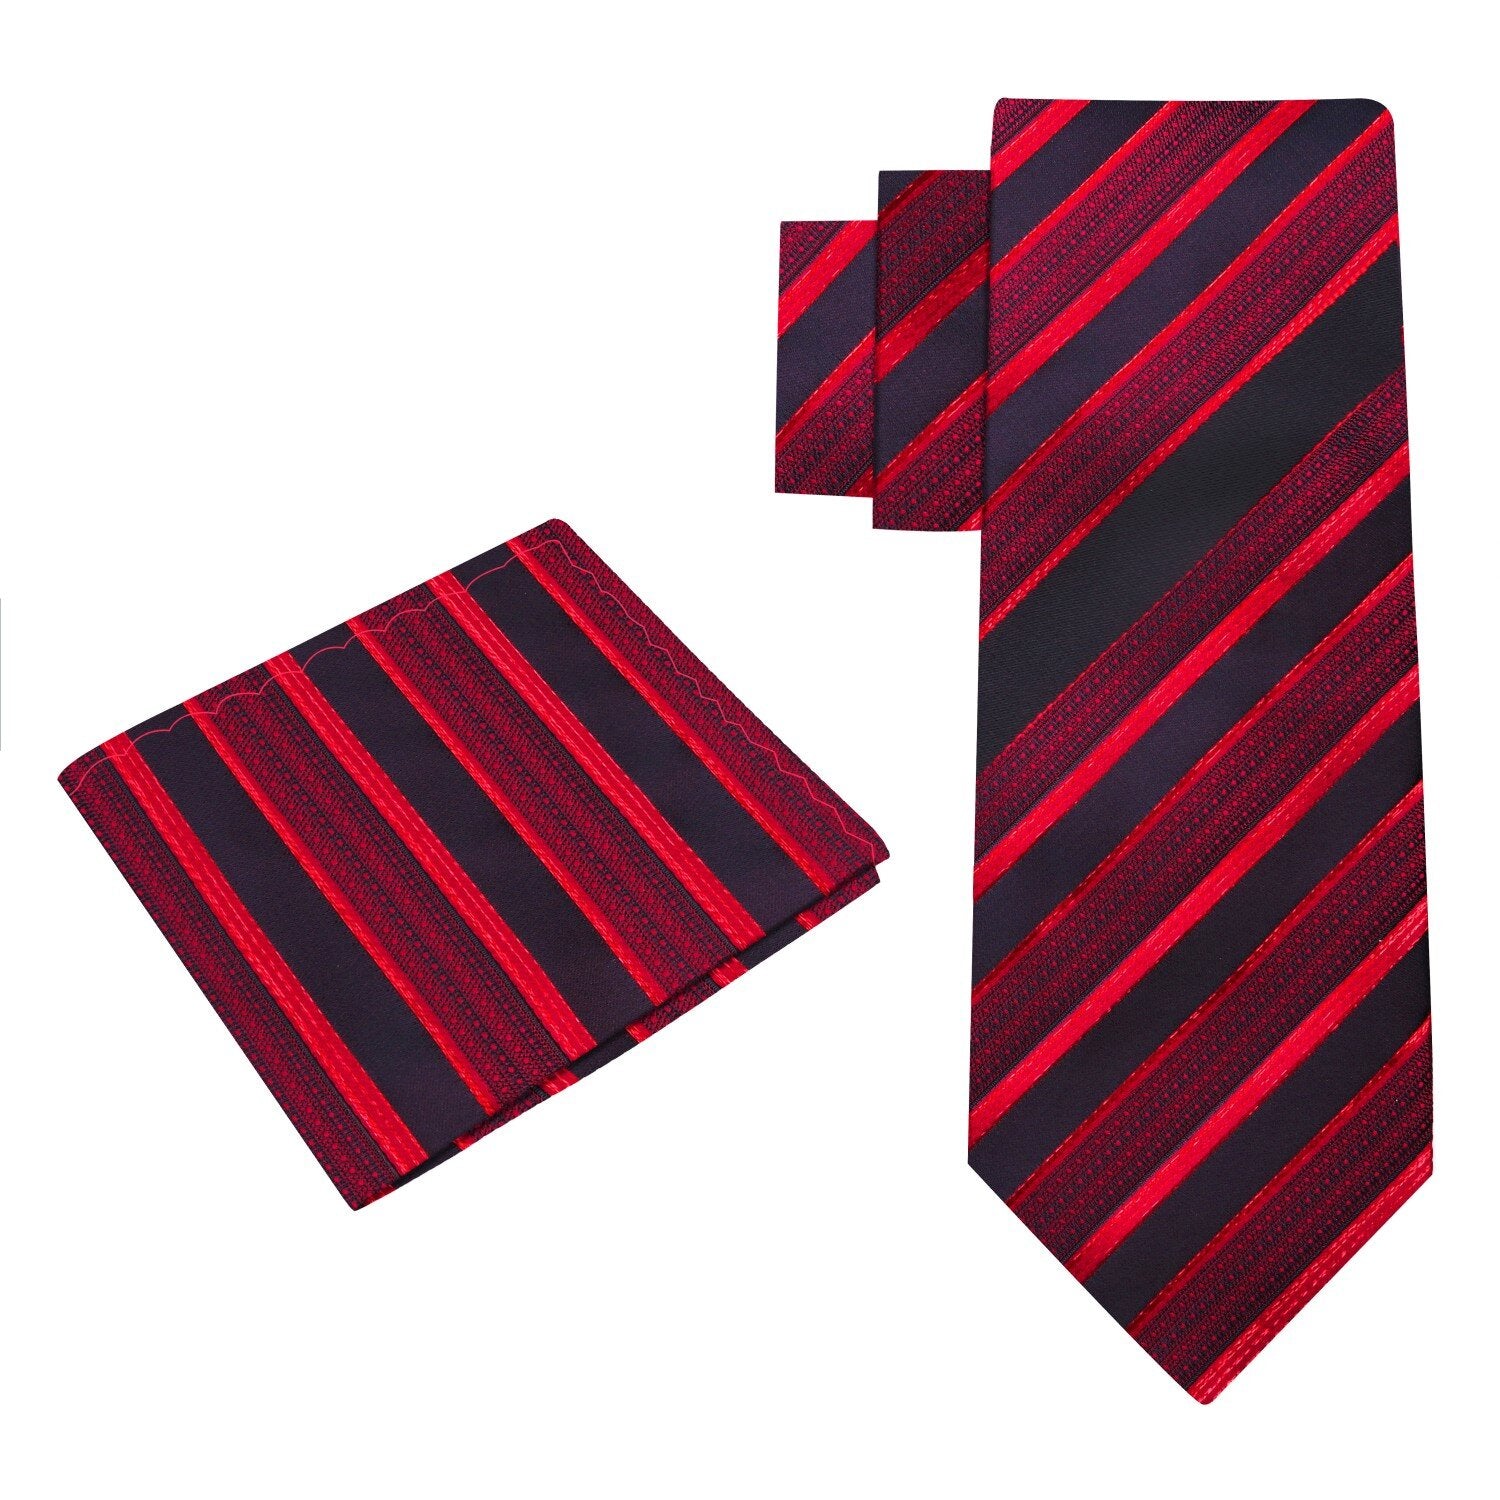 Alt View: A Black Cherry, Red Stripe Pattern Silk Necktie, Matching Pocket Square